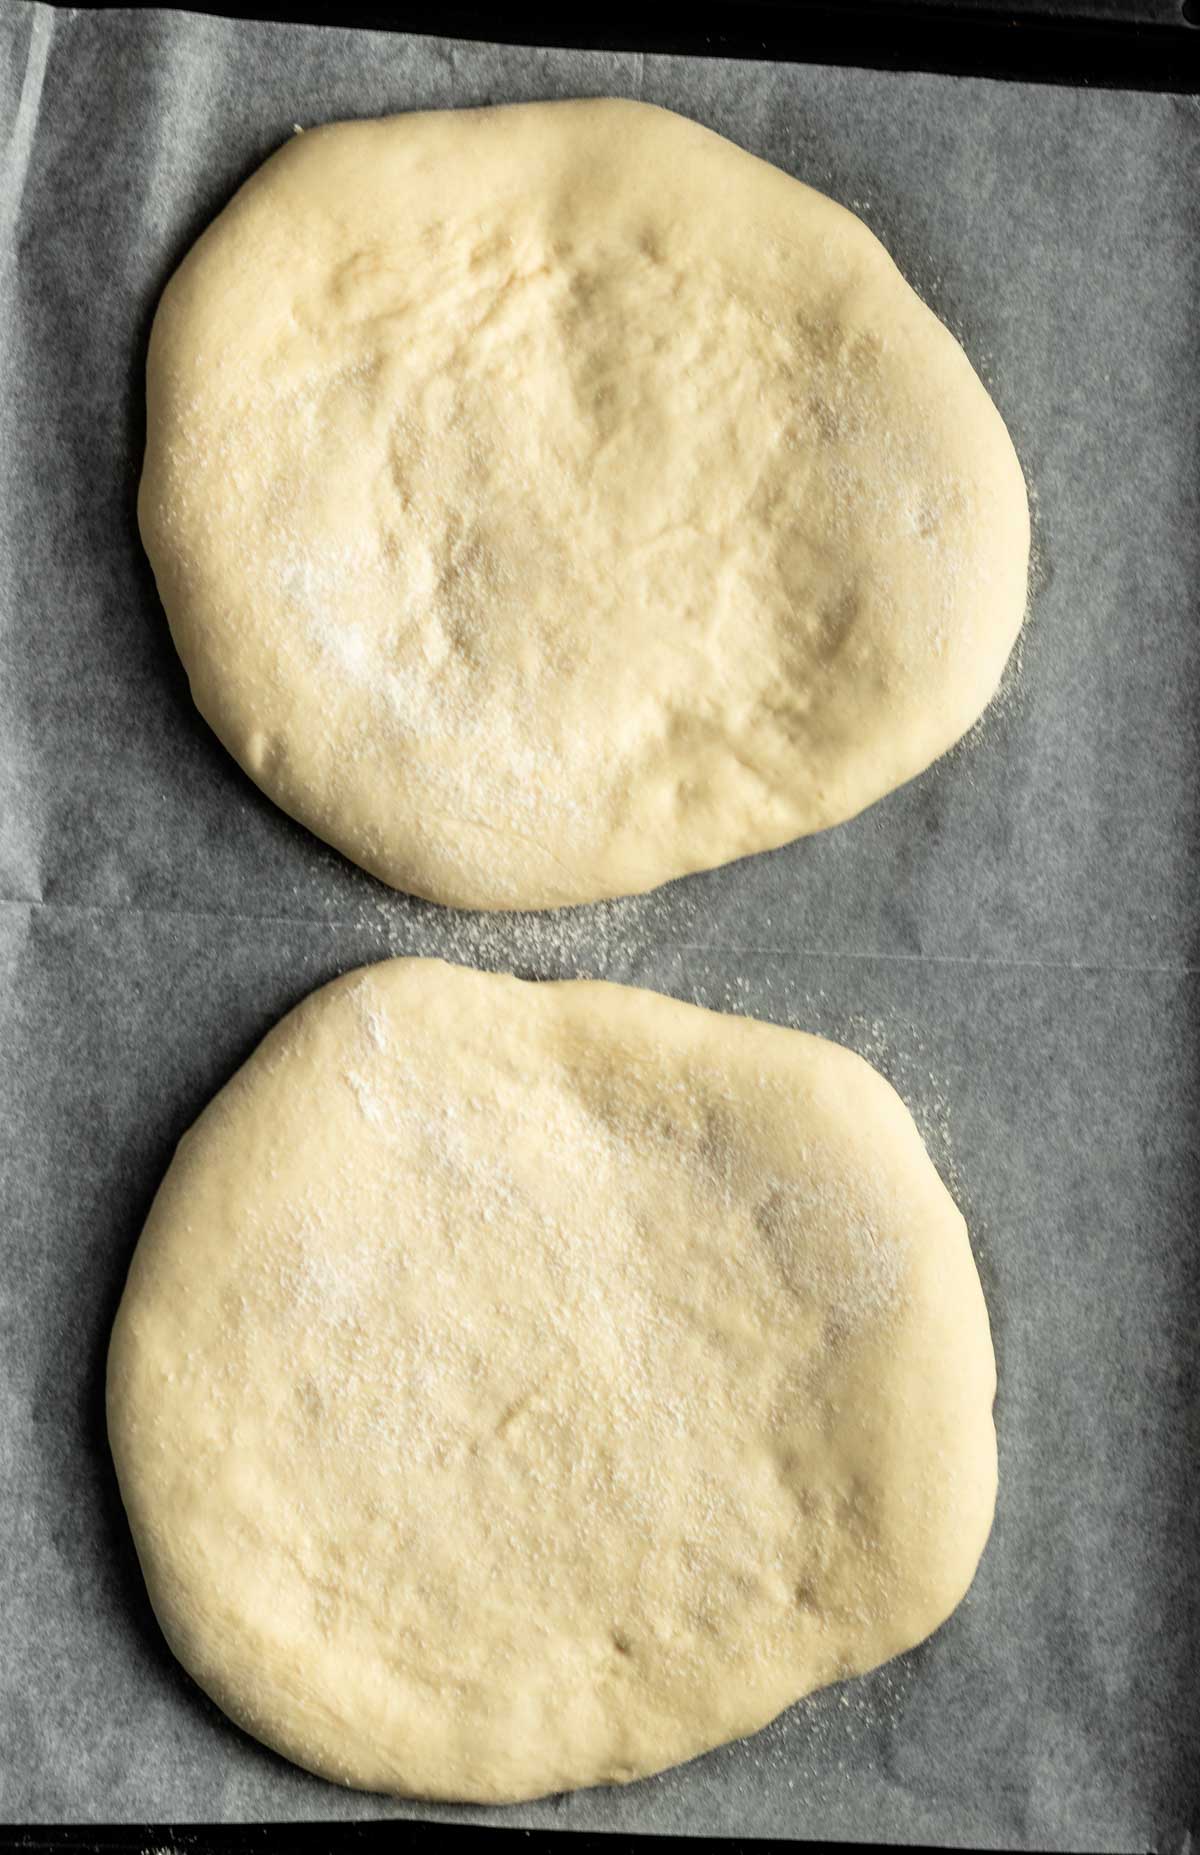 Bread process shots.